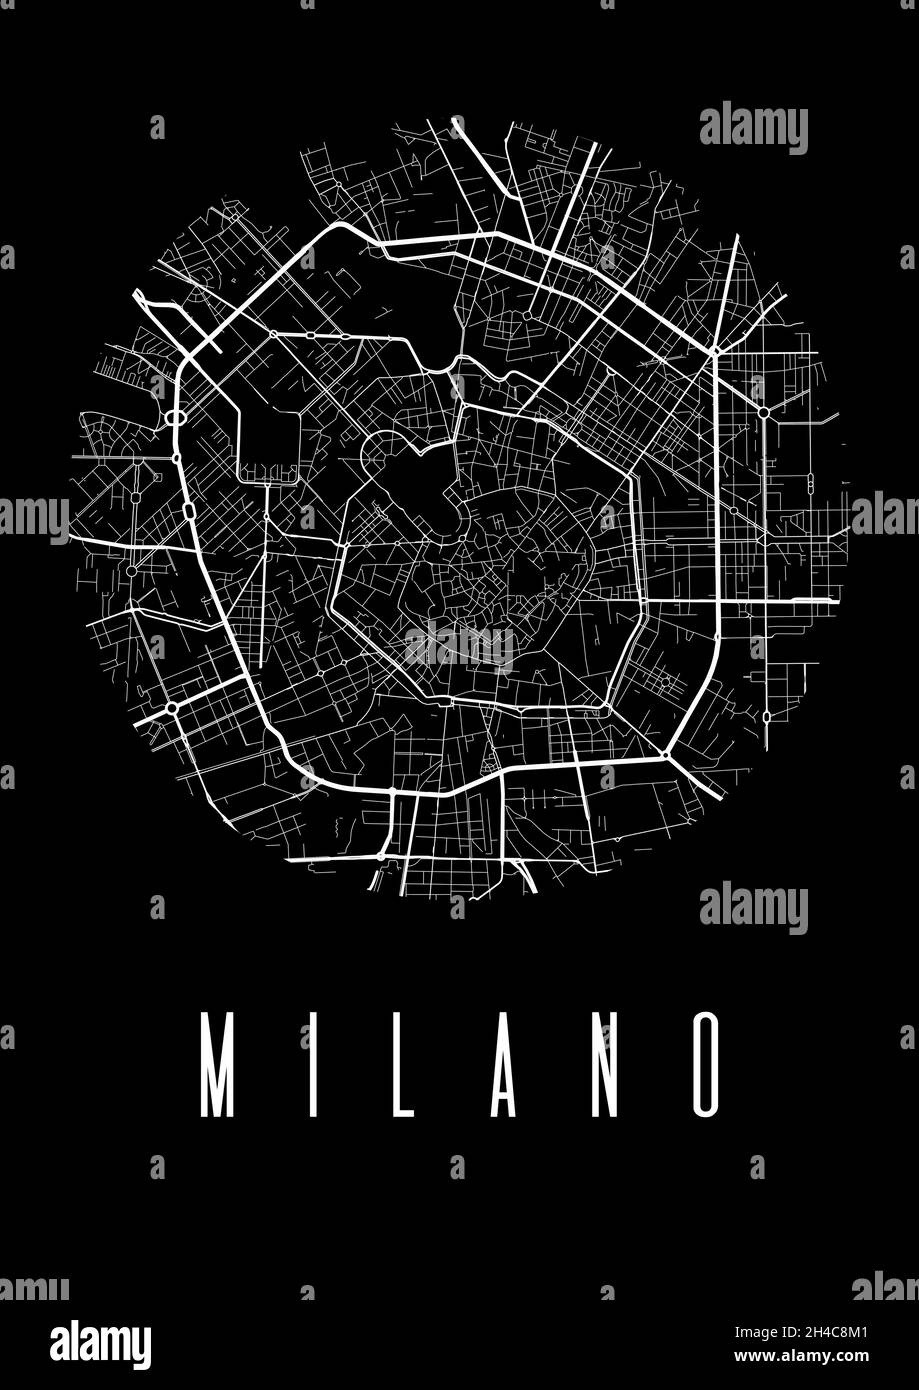 Mailand Kartenvektor schwarzes Poster. Runder Rundblick, Stadtplan von Mailand Stadtdarstellung. Stadtbild Fläche Panorama Silhouette Luftbild, Typografie Stock Vektor